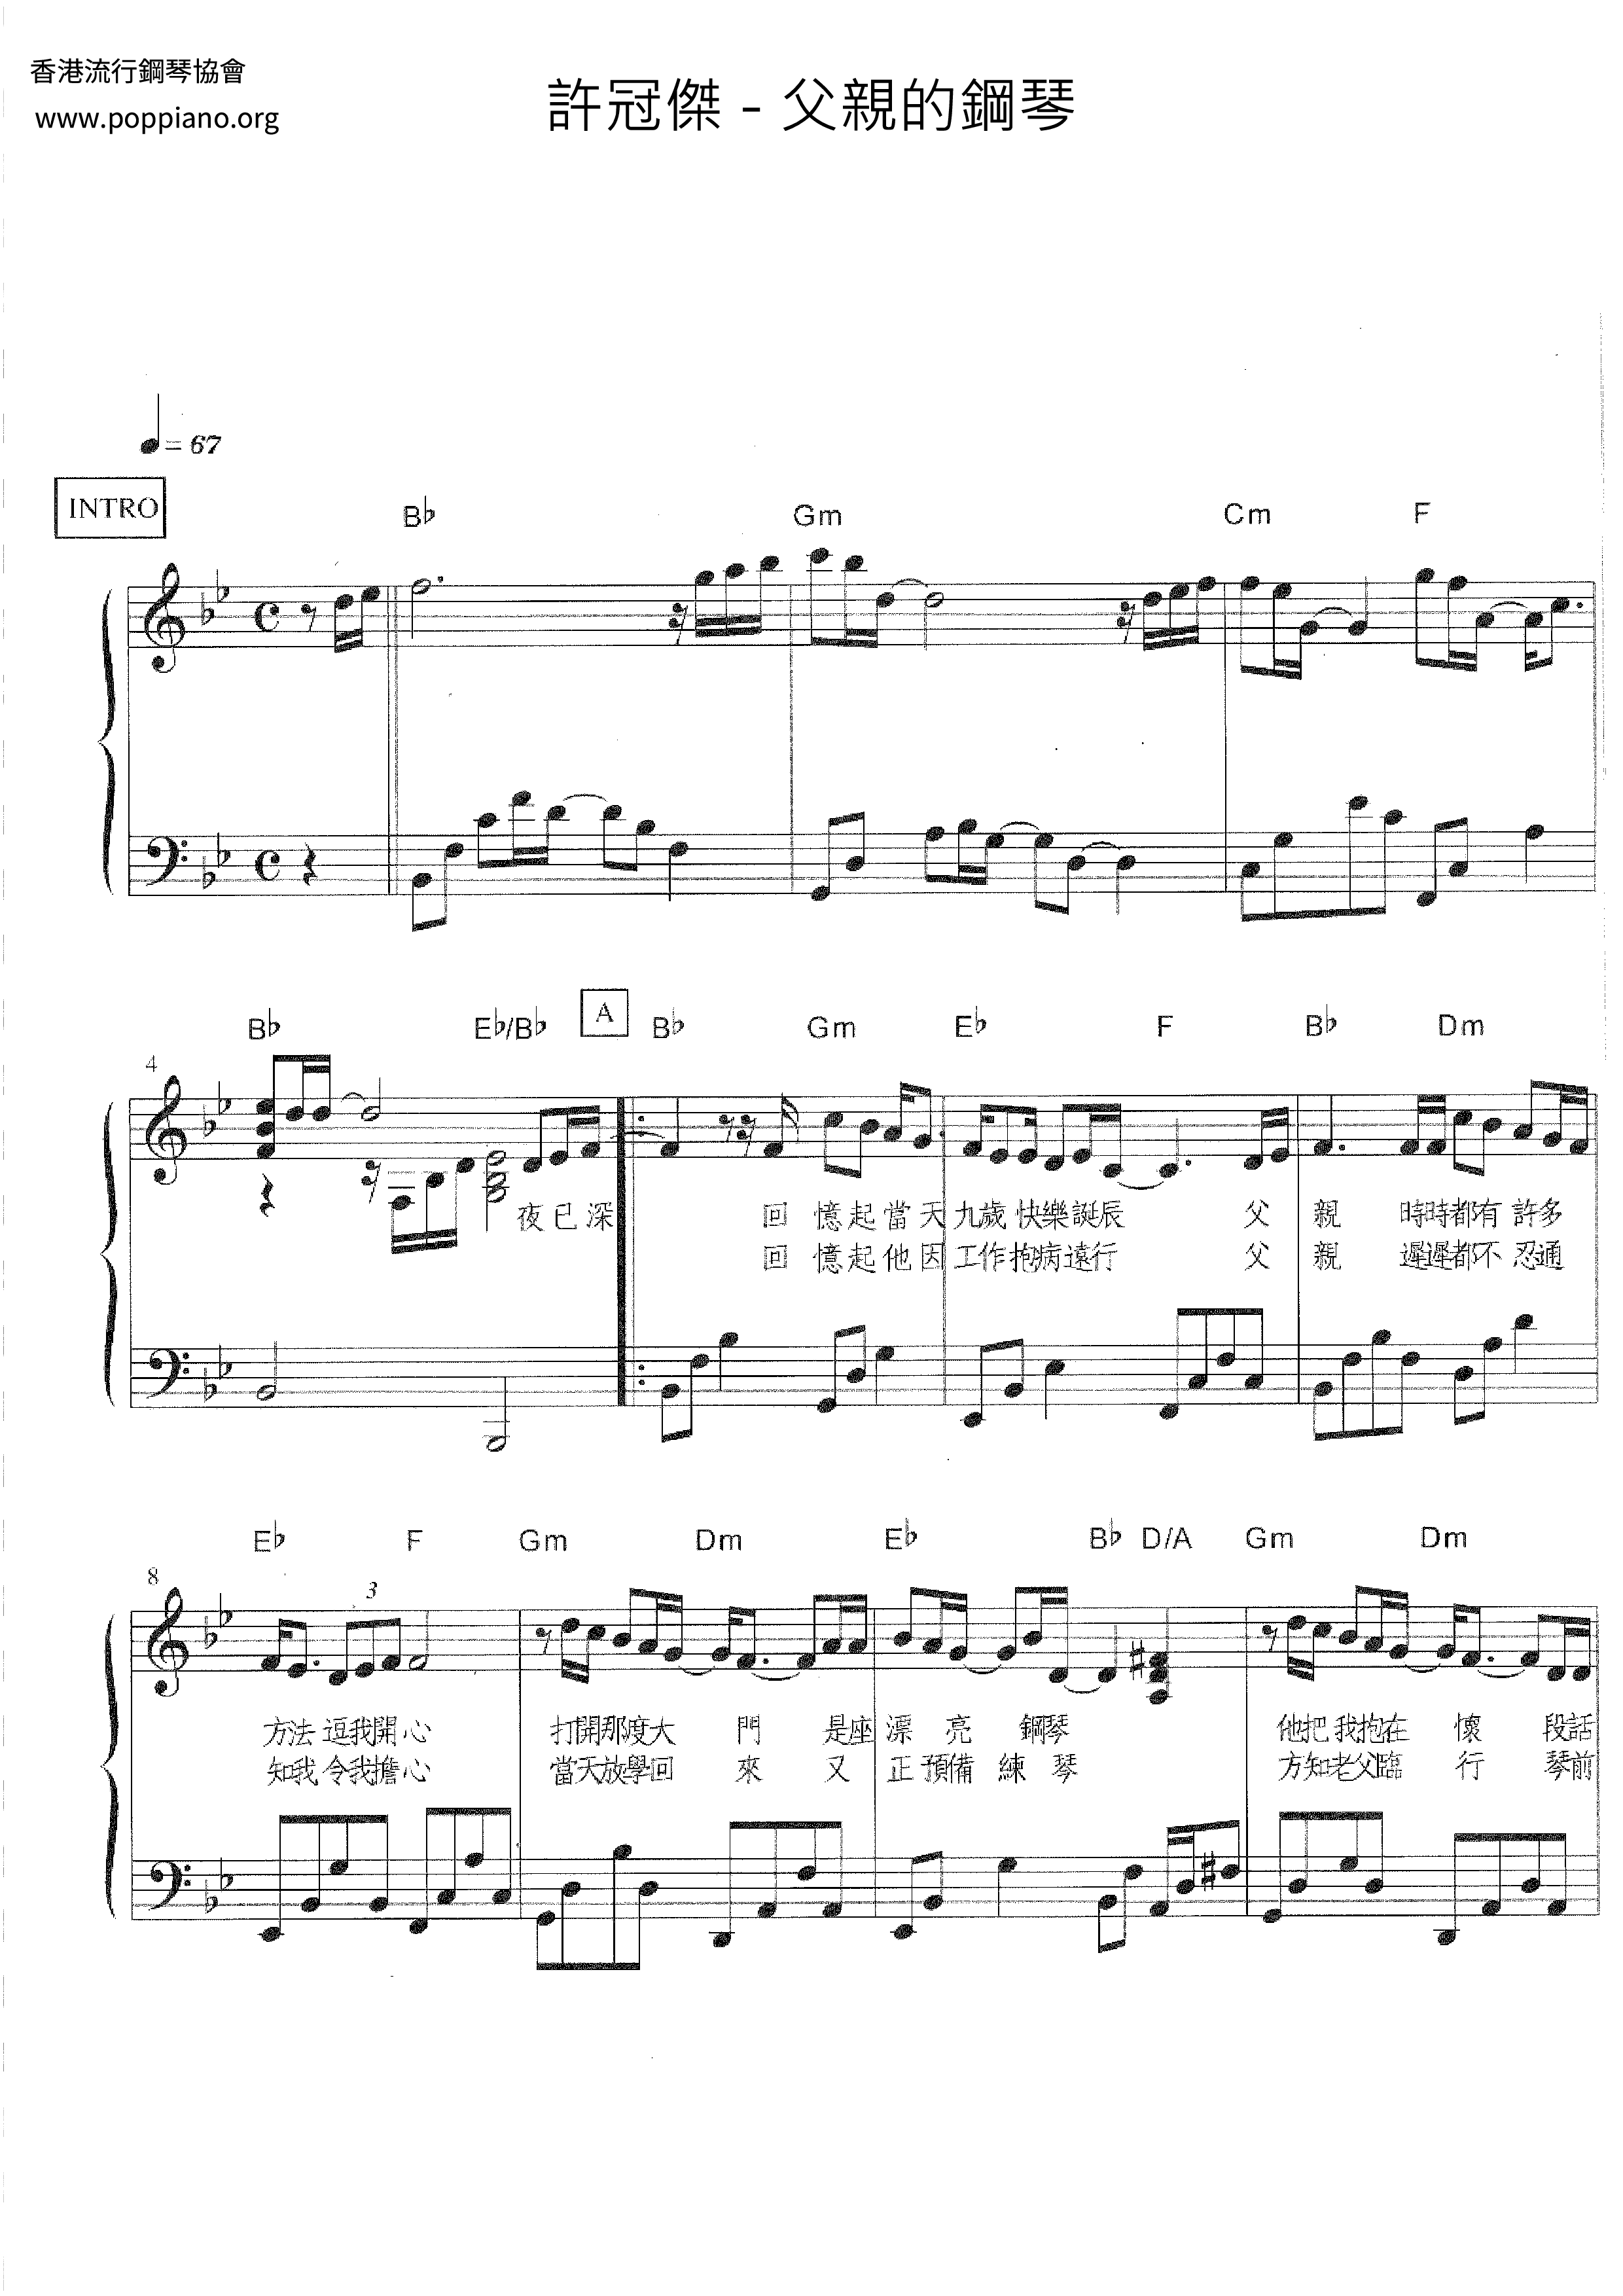 Father's Piano Score